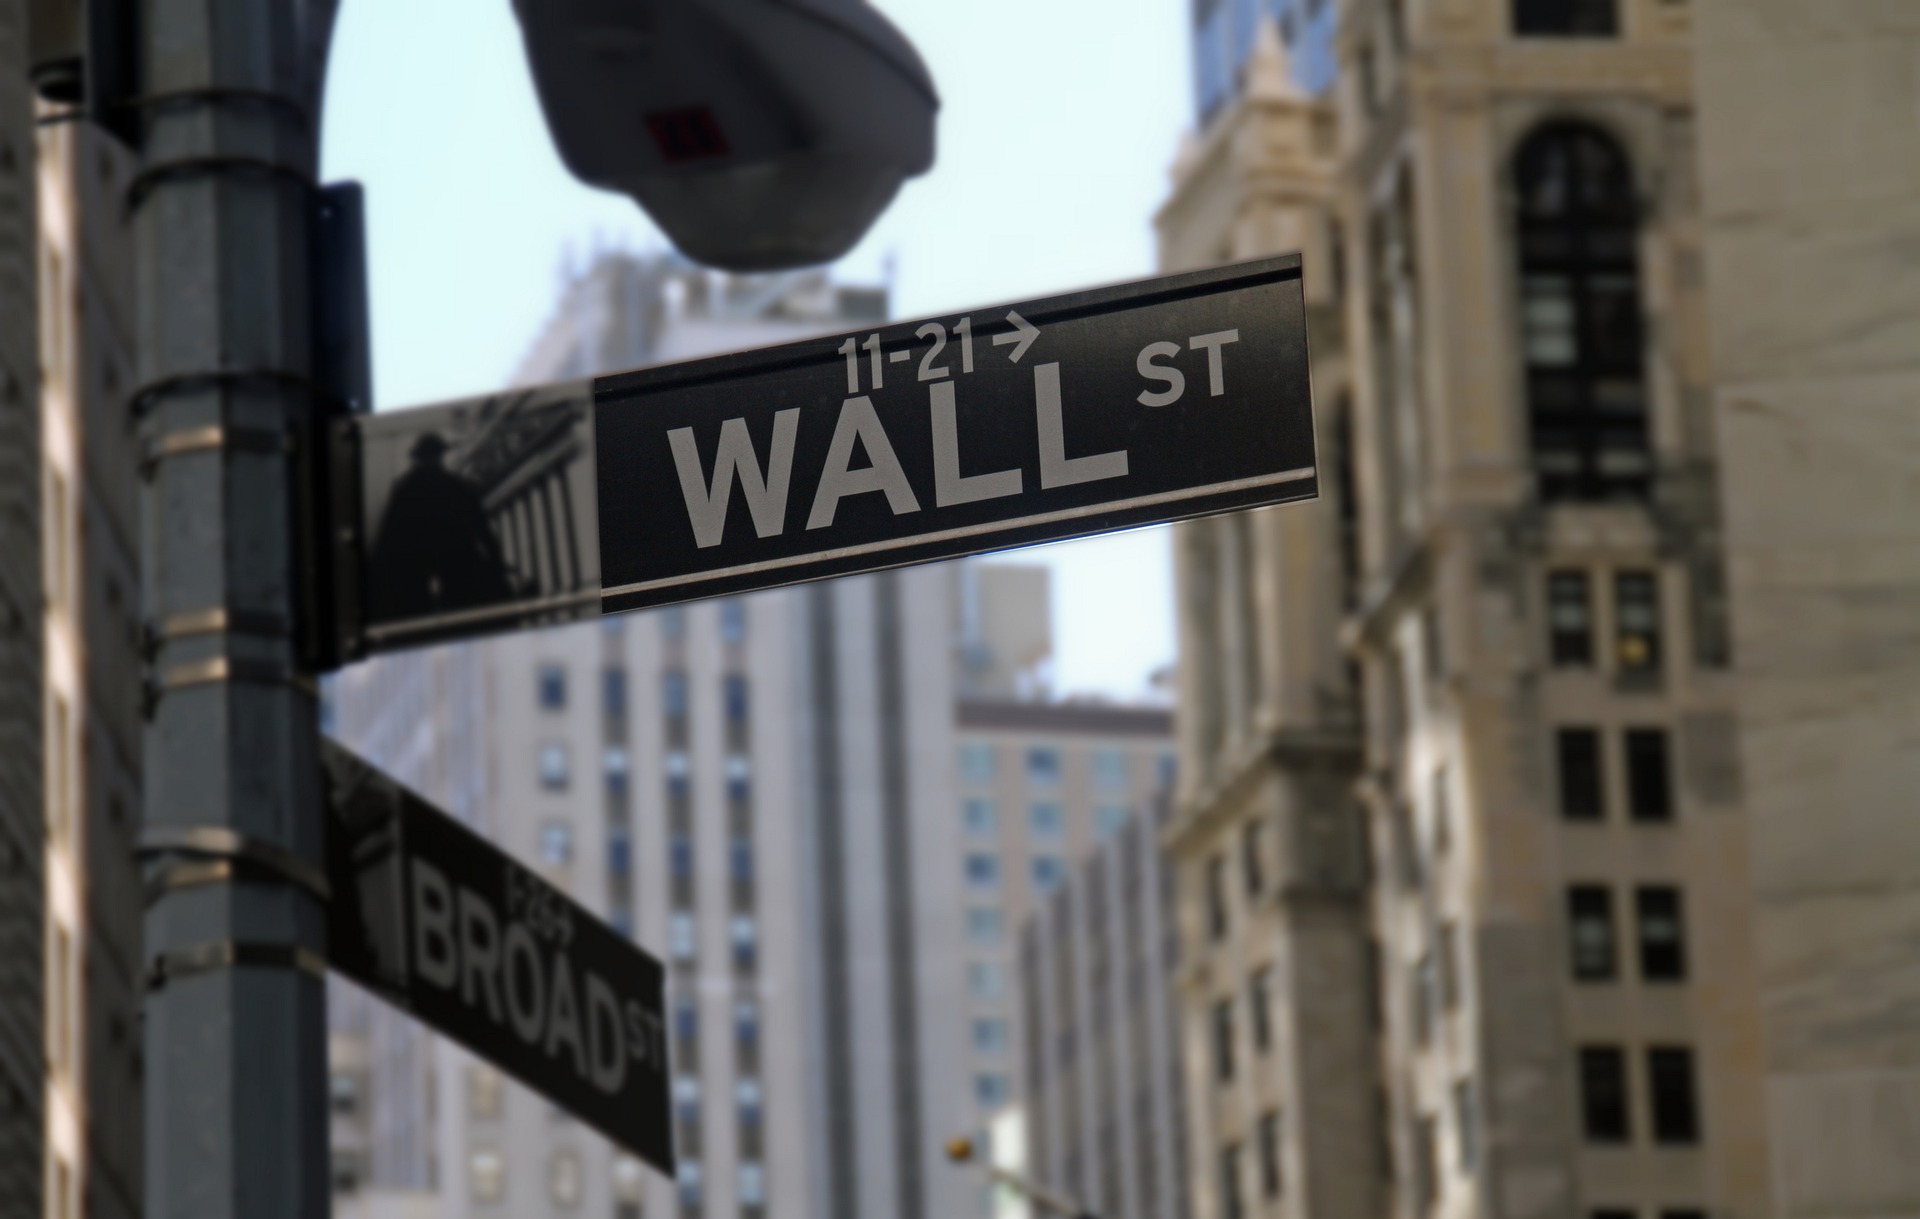 Wall Street, en Nueva York, es la capital financiera de los Estados Unidos. Foto: Pixabay